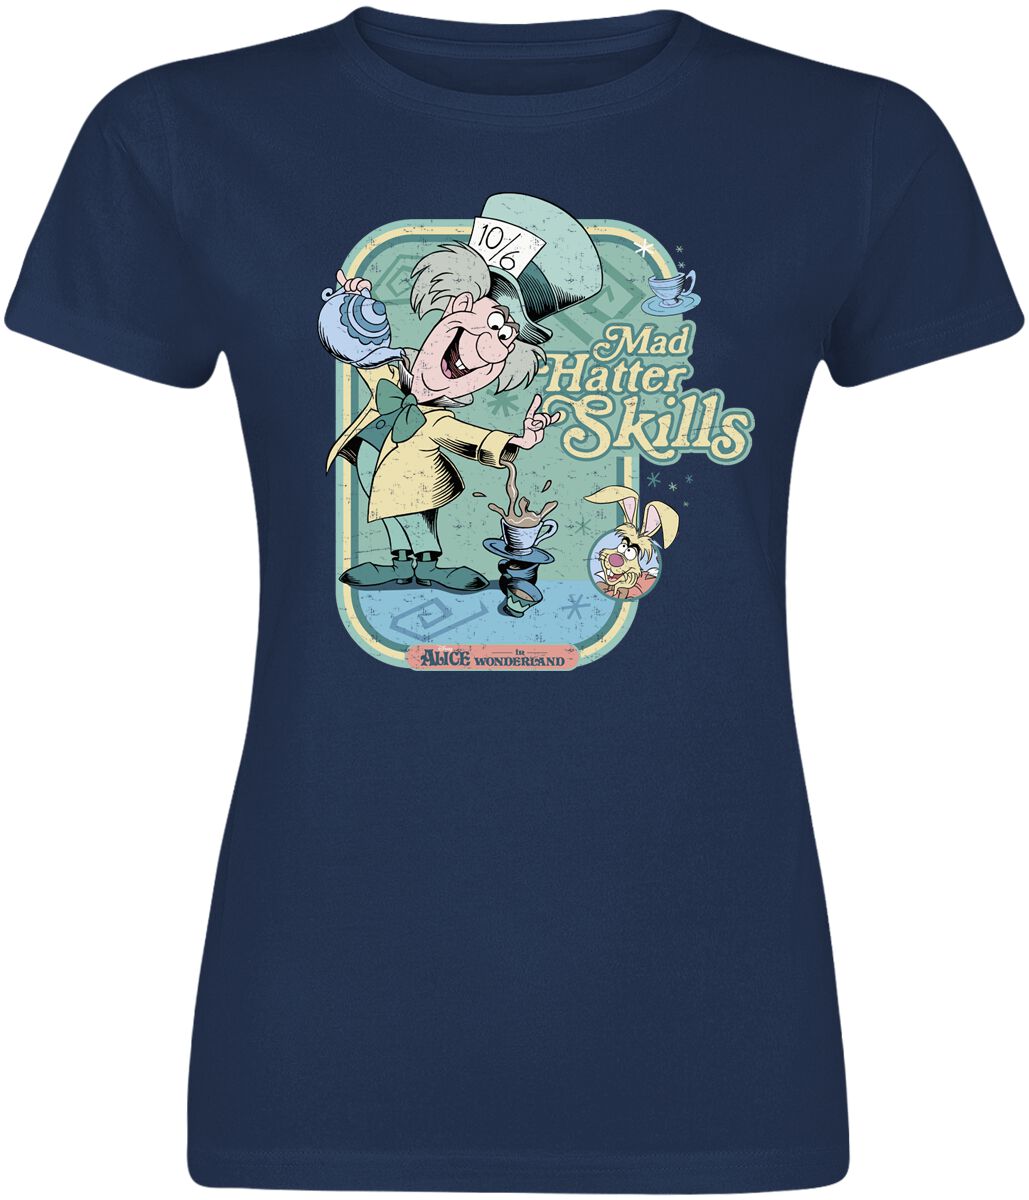 Alice im Wunderland - Disney T-Shirt - Mad hatter Skills - S bis XXL - für Damen - Größe XL - navy  - EMP exklusives Merchandise!